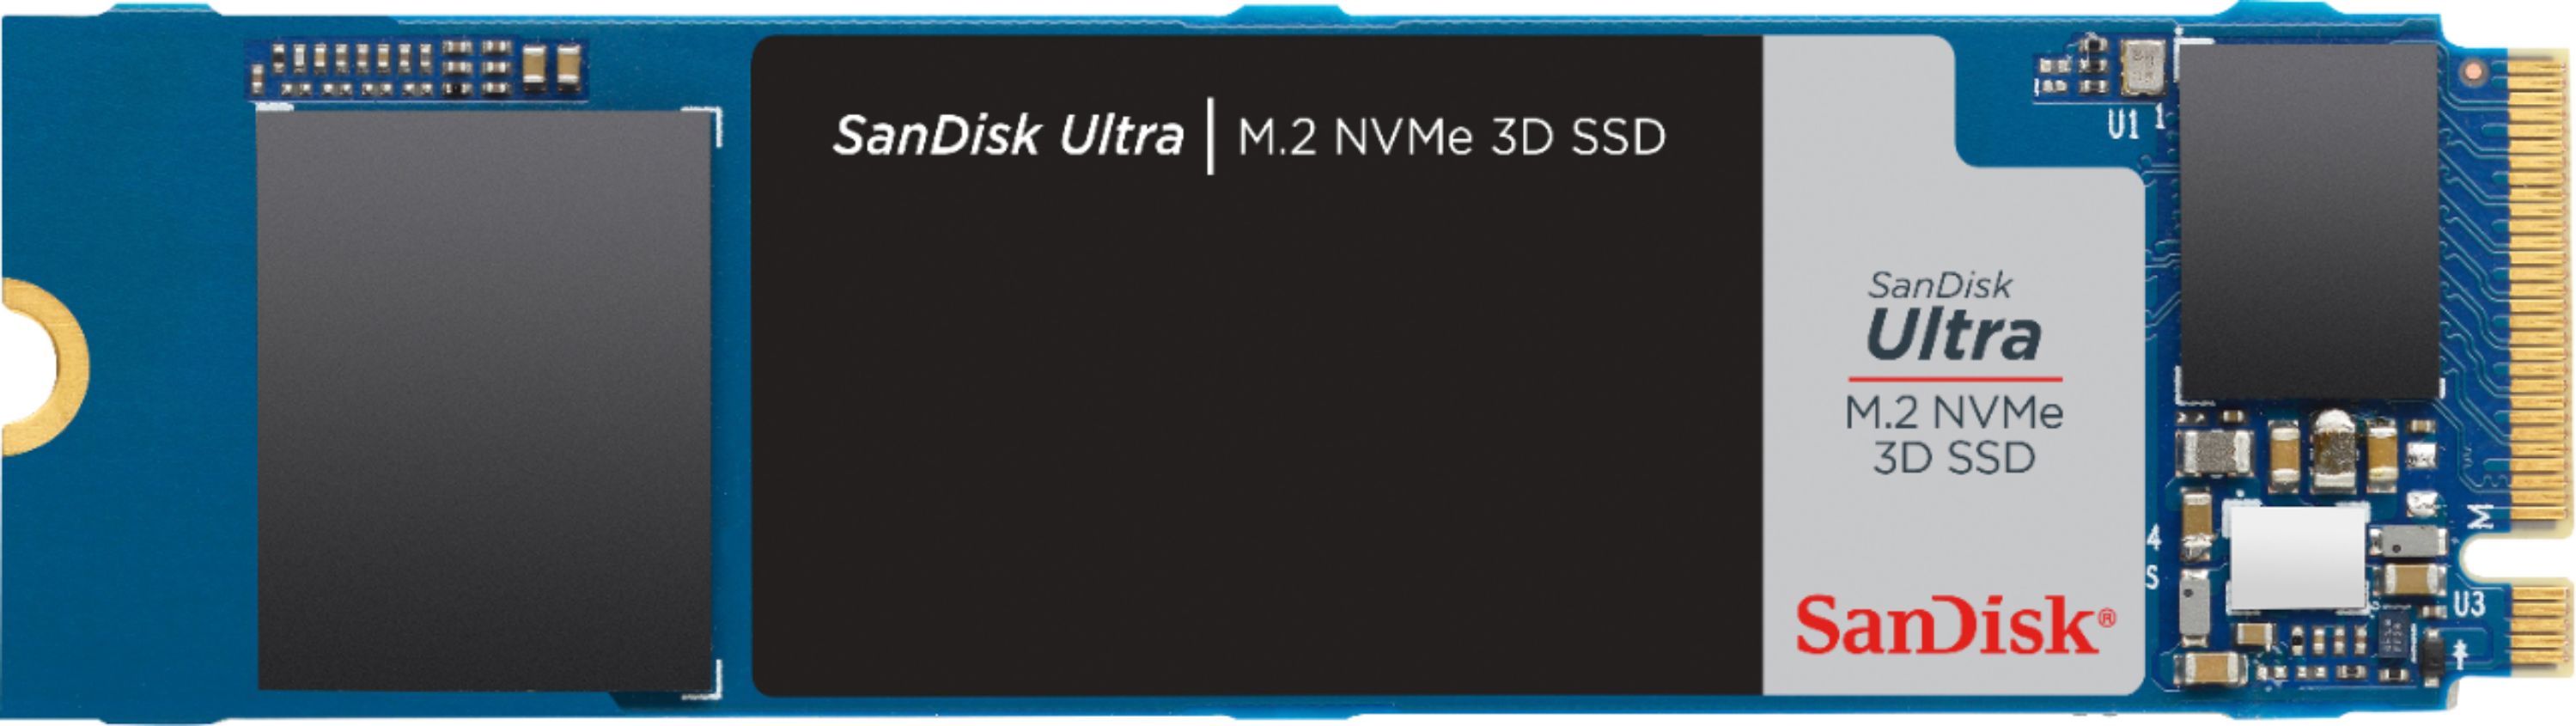 Best Buy: SanDisk Ultra 1TB Internal SSD PCIe Gen 3 x4 NVMe 